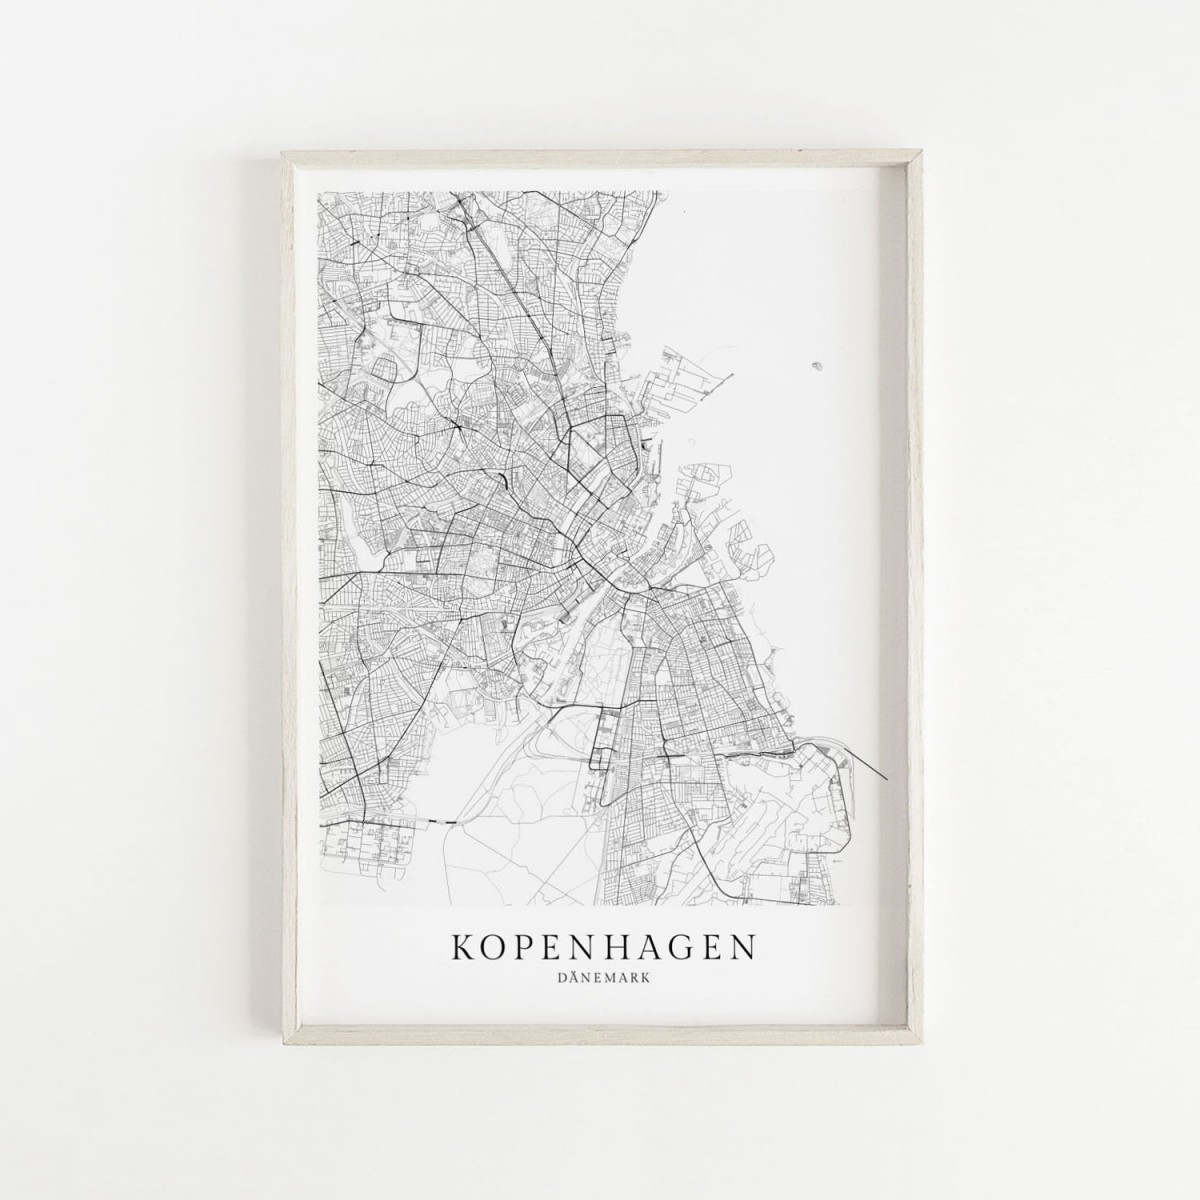 Kopenhagen Karte als hochwertiger Print - Posterdruck im skandinavischen Stil Skanemarie